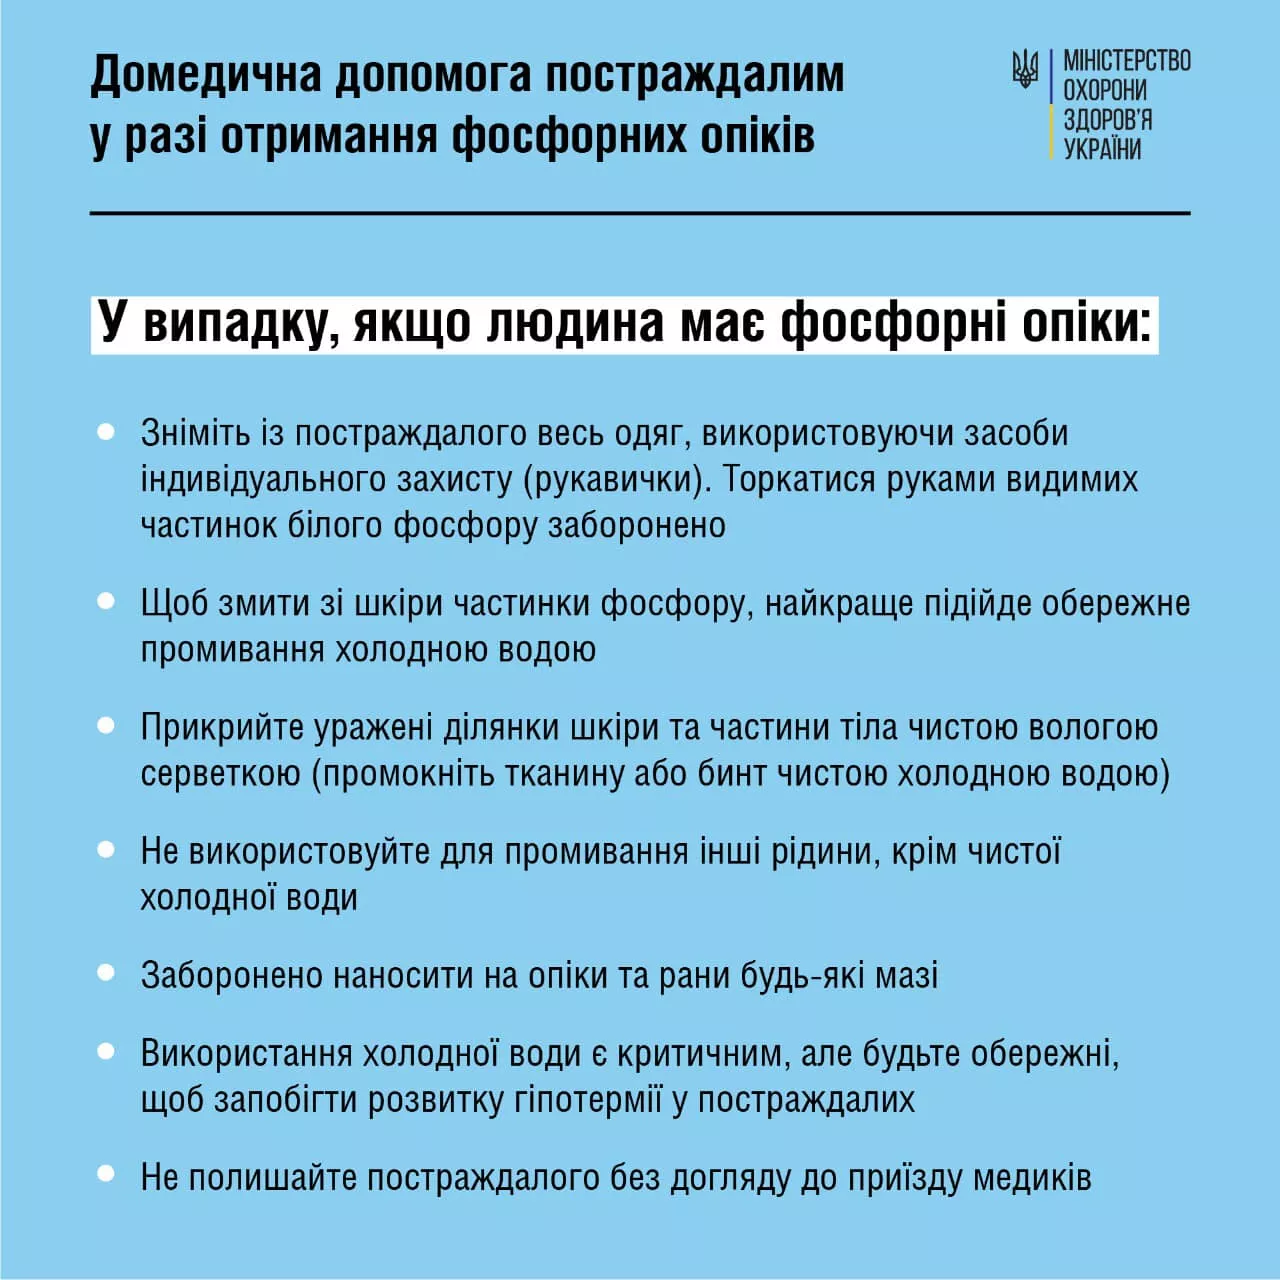 МОЗ України не рекомендує використовувати соду для надання допомоги при фосфорних опіках